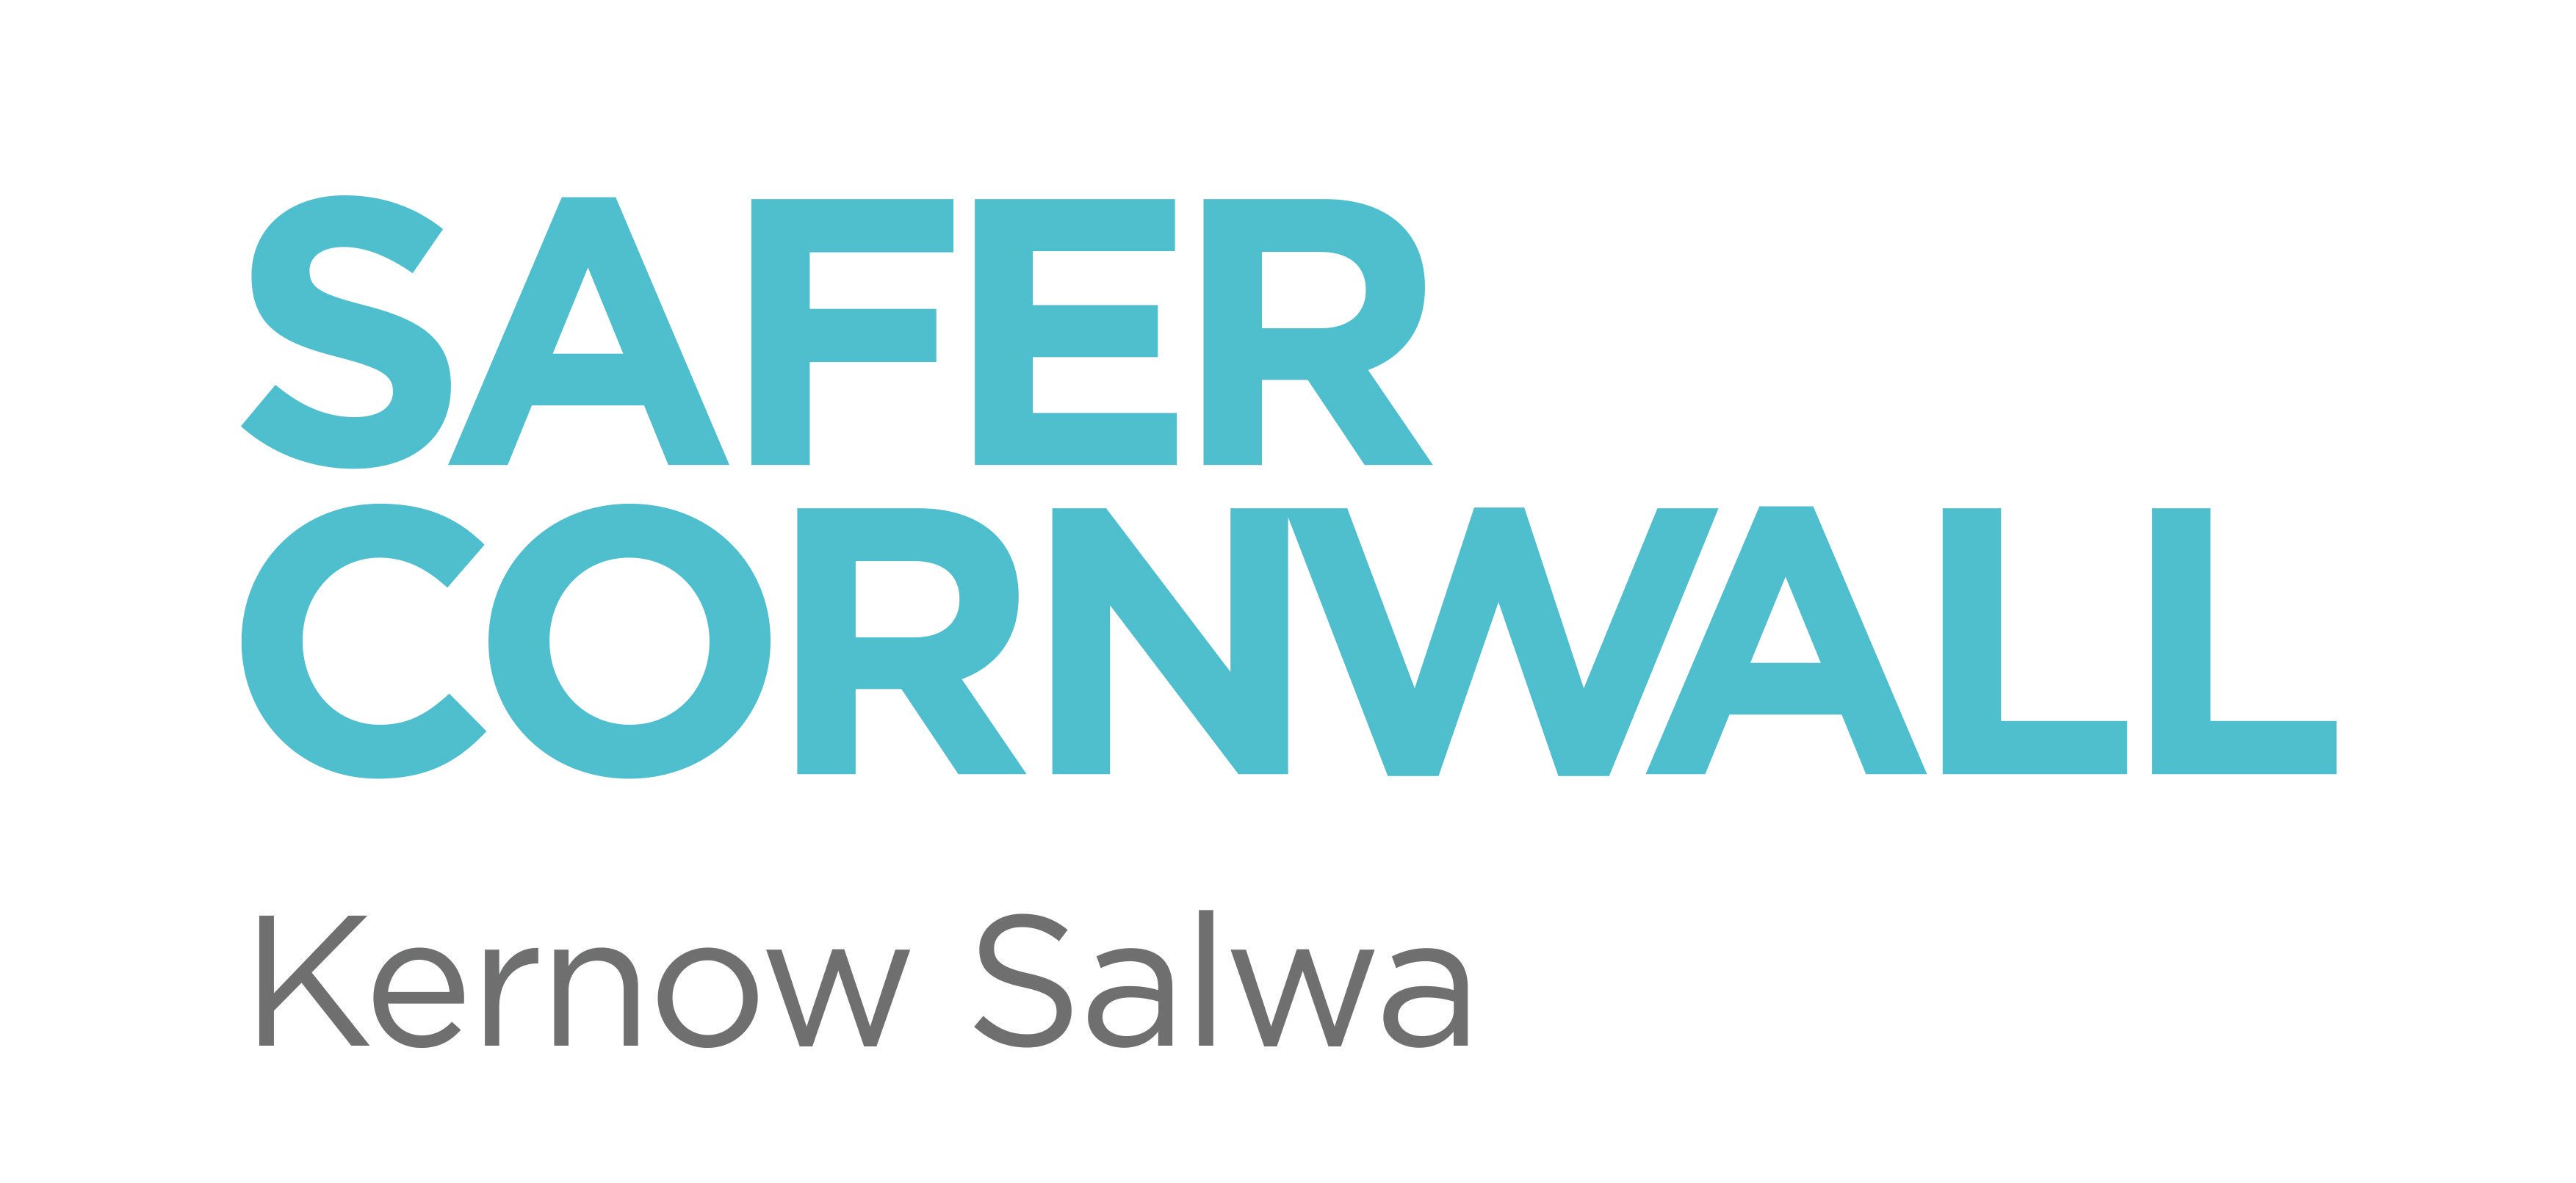 Cornwall Logo - Safer Cornwall Logo : Safer Cornwall